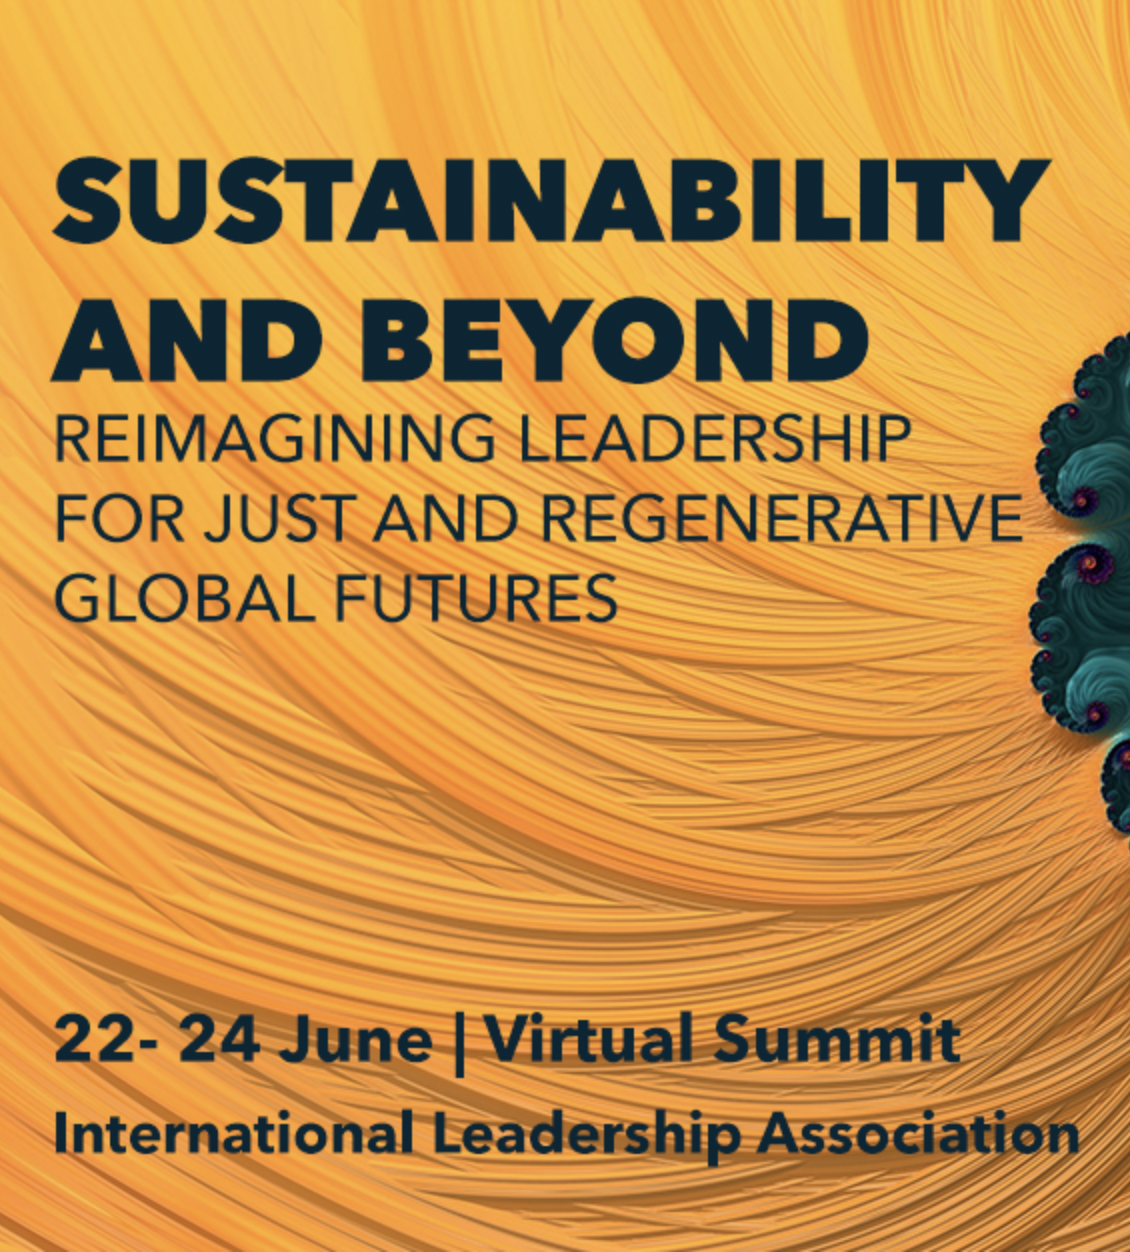 ILA's 2021 Sustainability Summit